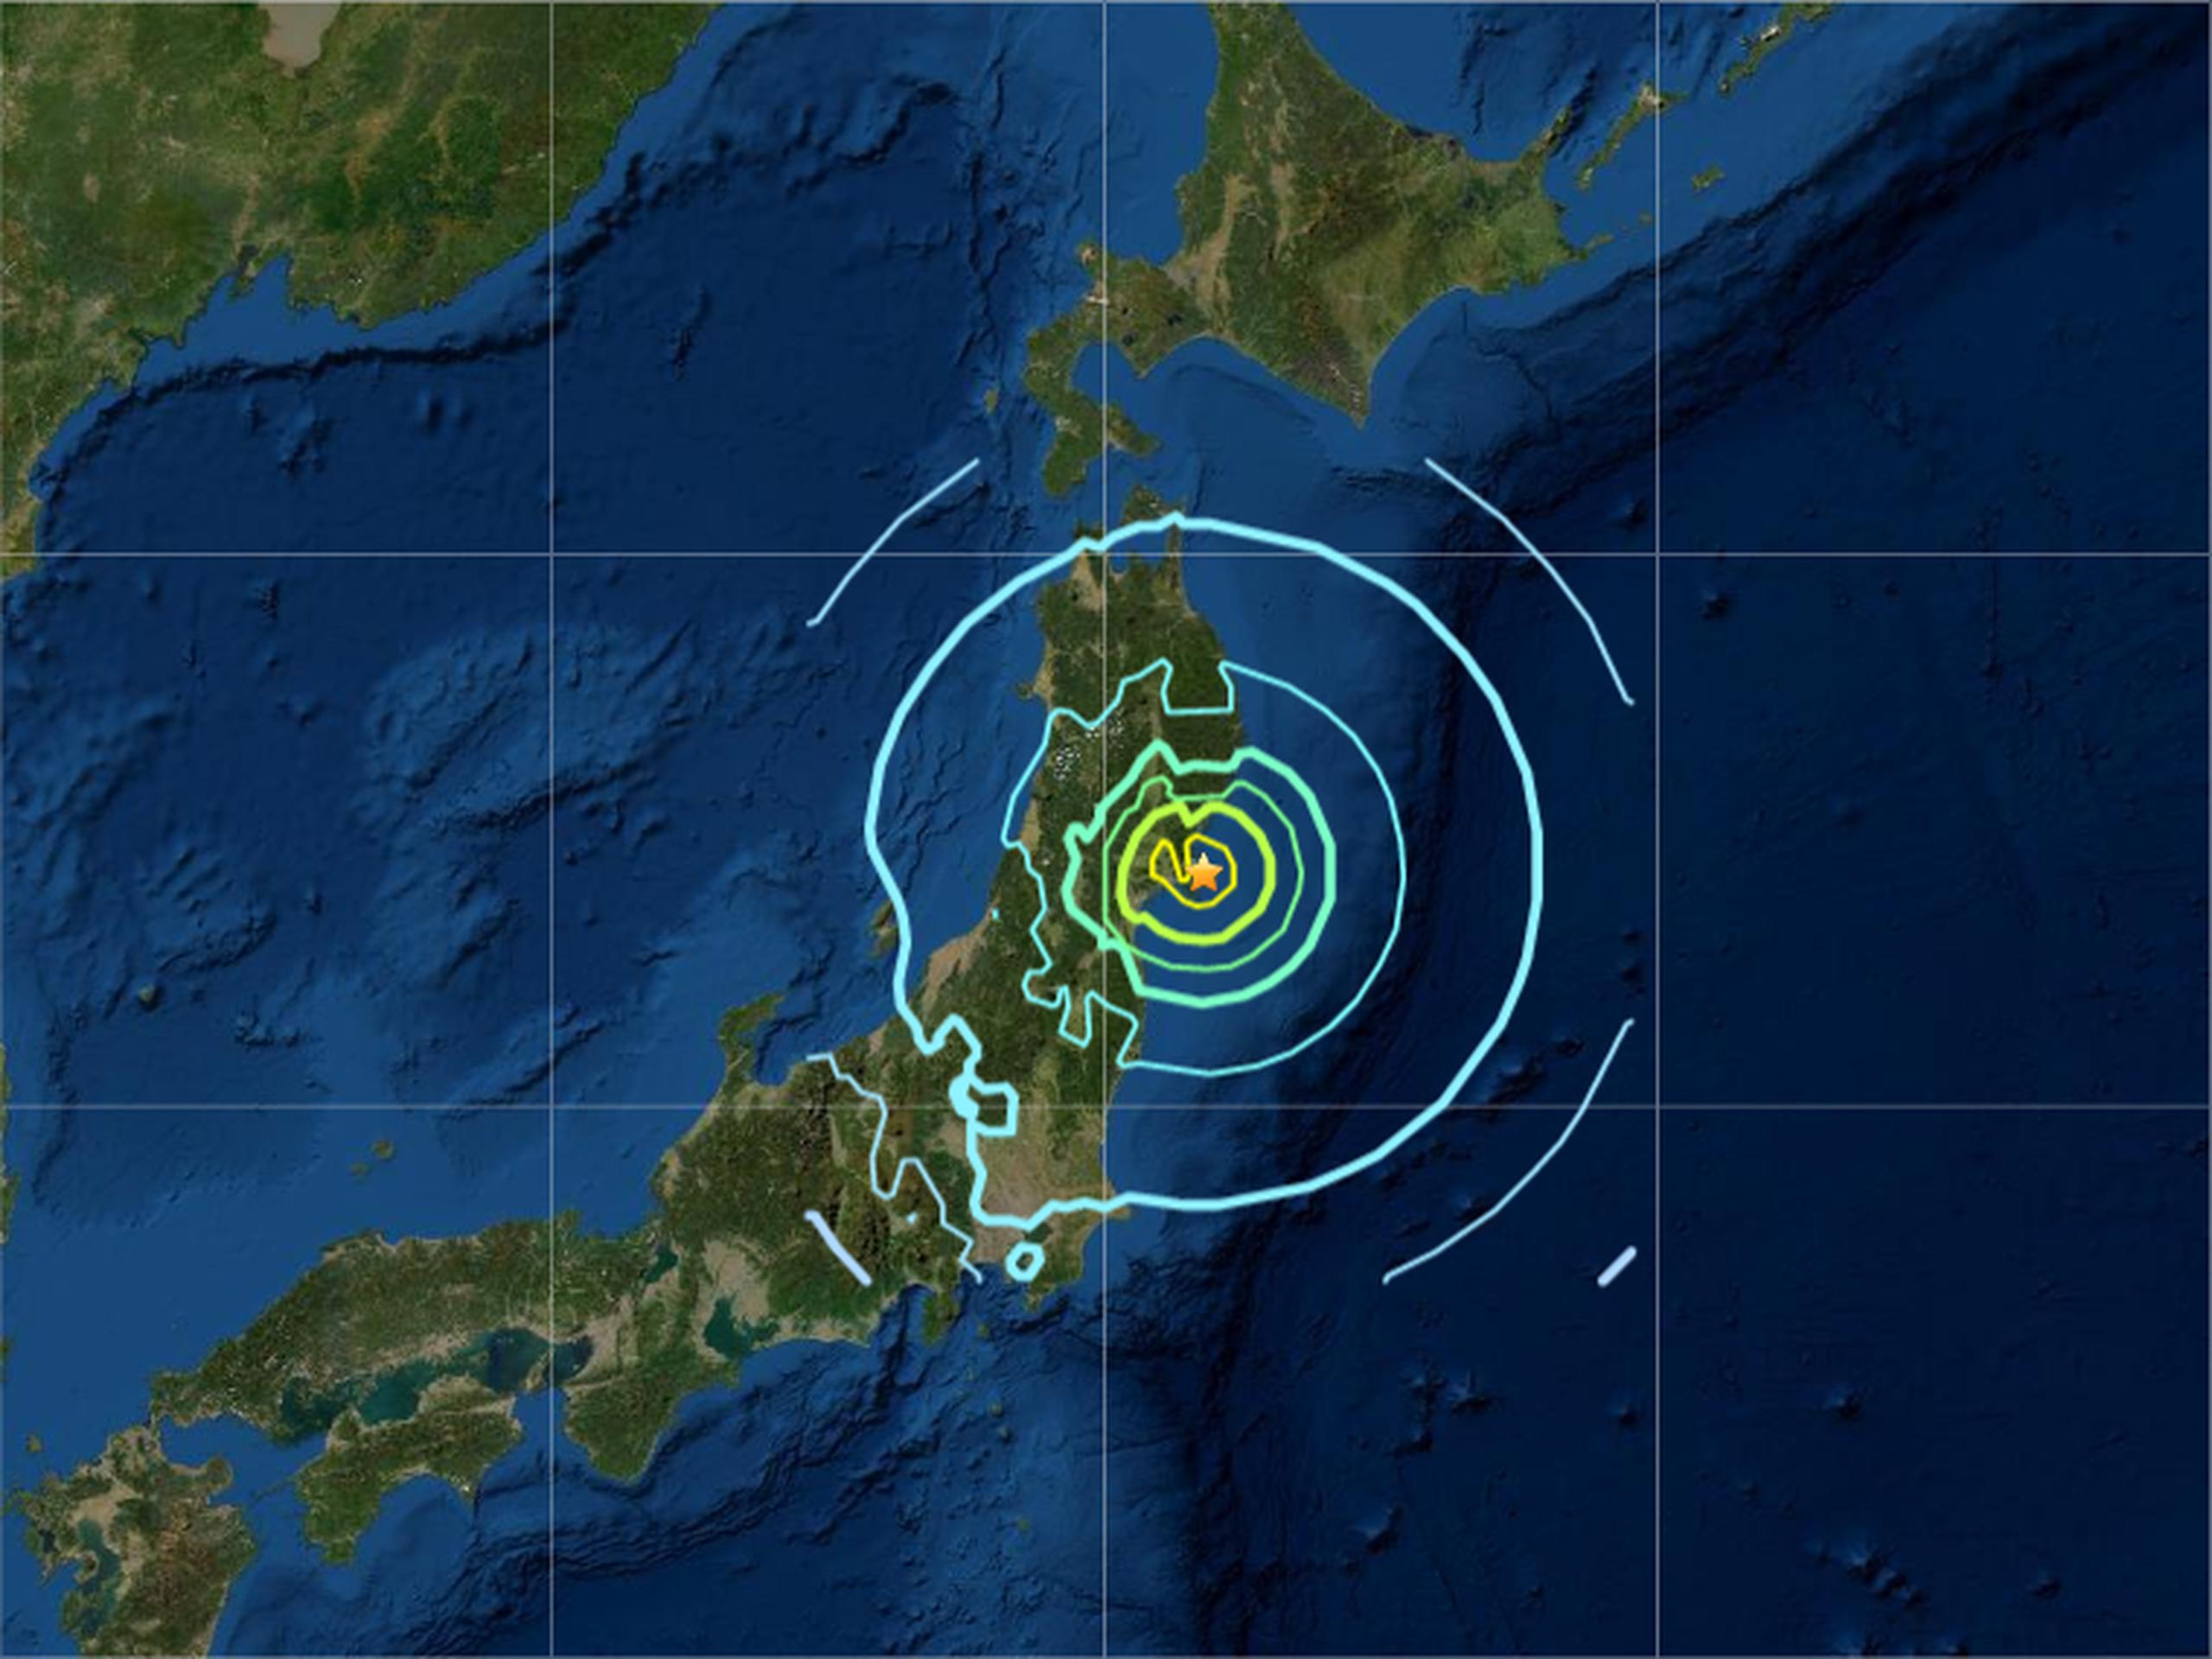 Mapa que muestra las ondas sísmicas del terremoto de magnitud 7.0 registrado el sábado 20 de marzo de 2021 en Japón.